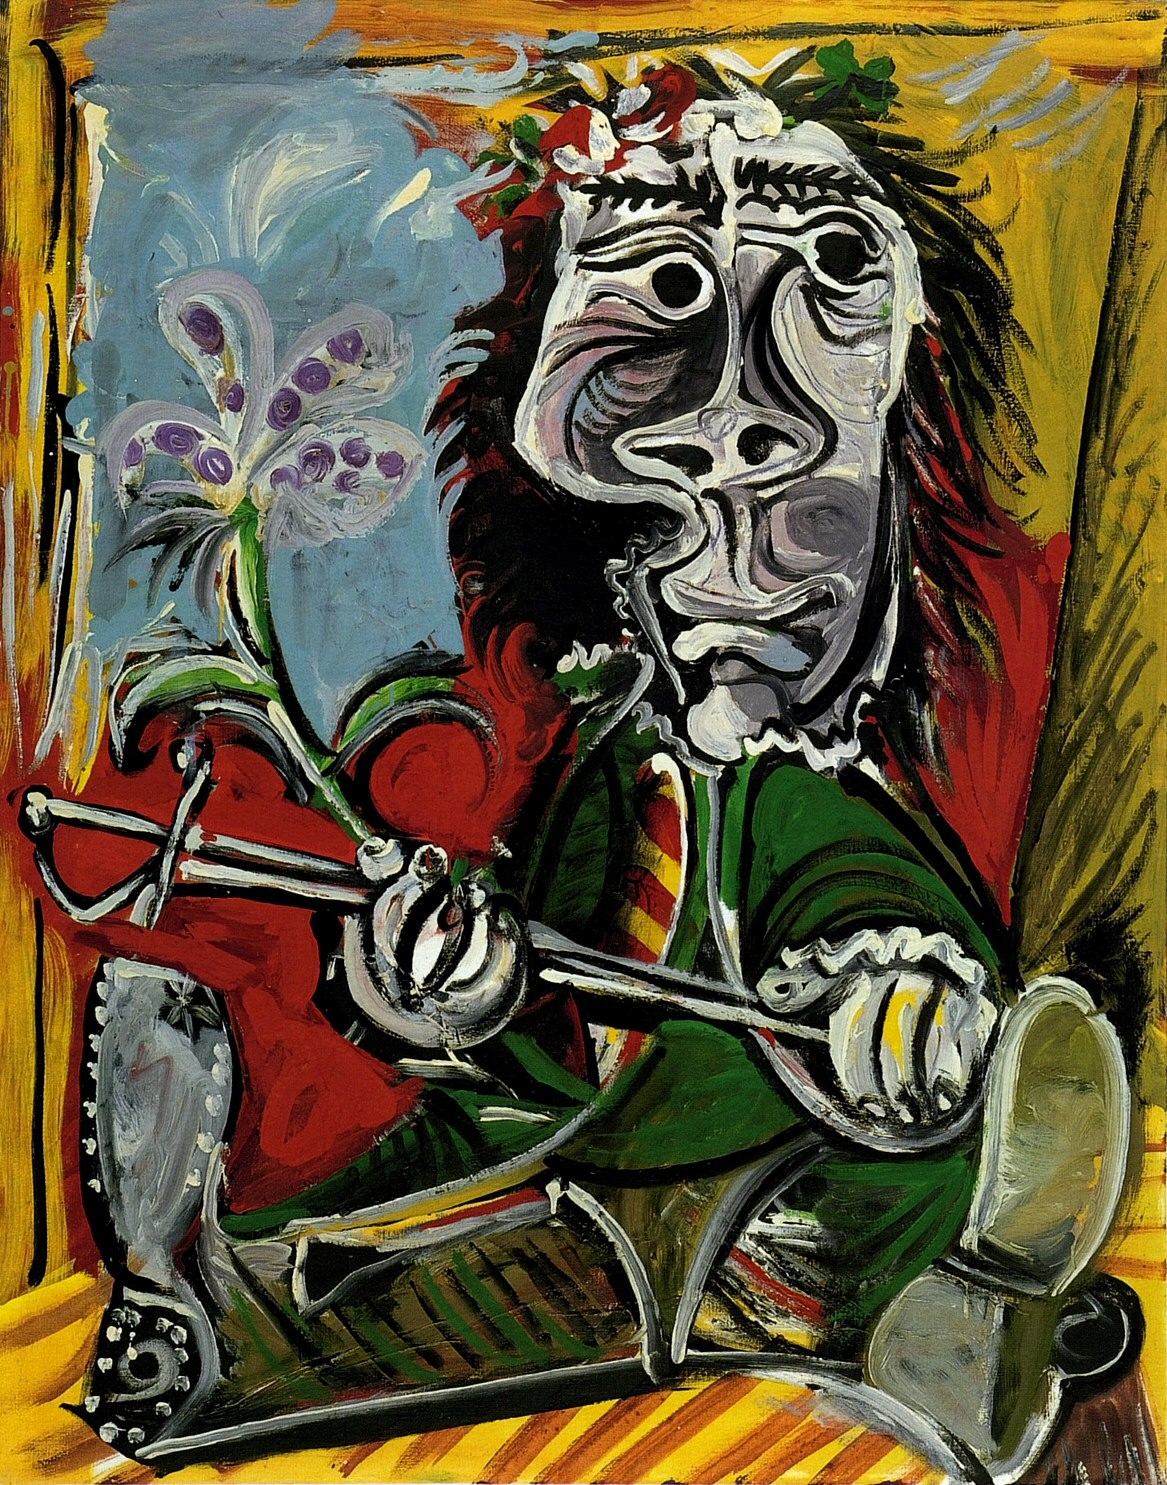 Пабло Пикассо. "Мужчина со шпагой и цветком". 1969. Частная коллекция.